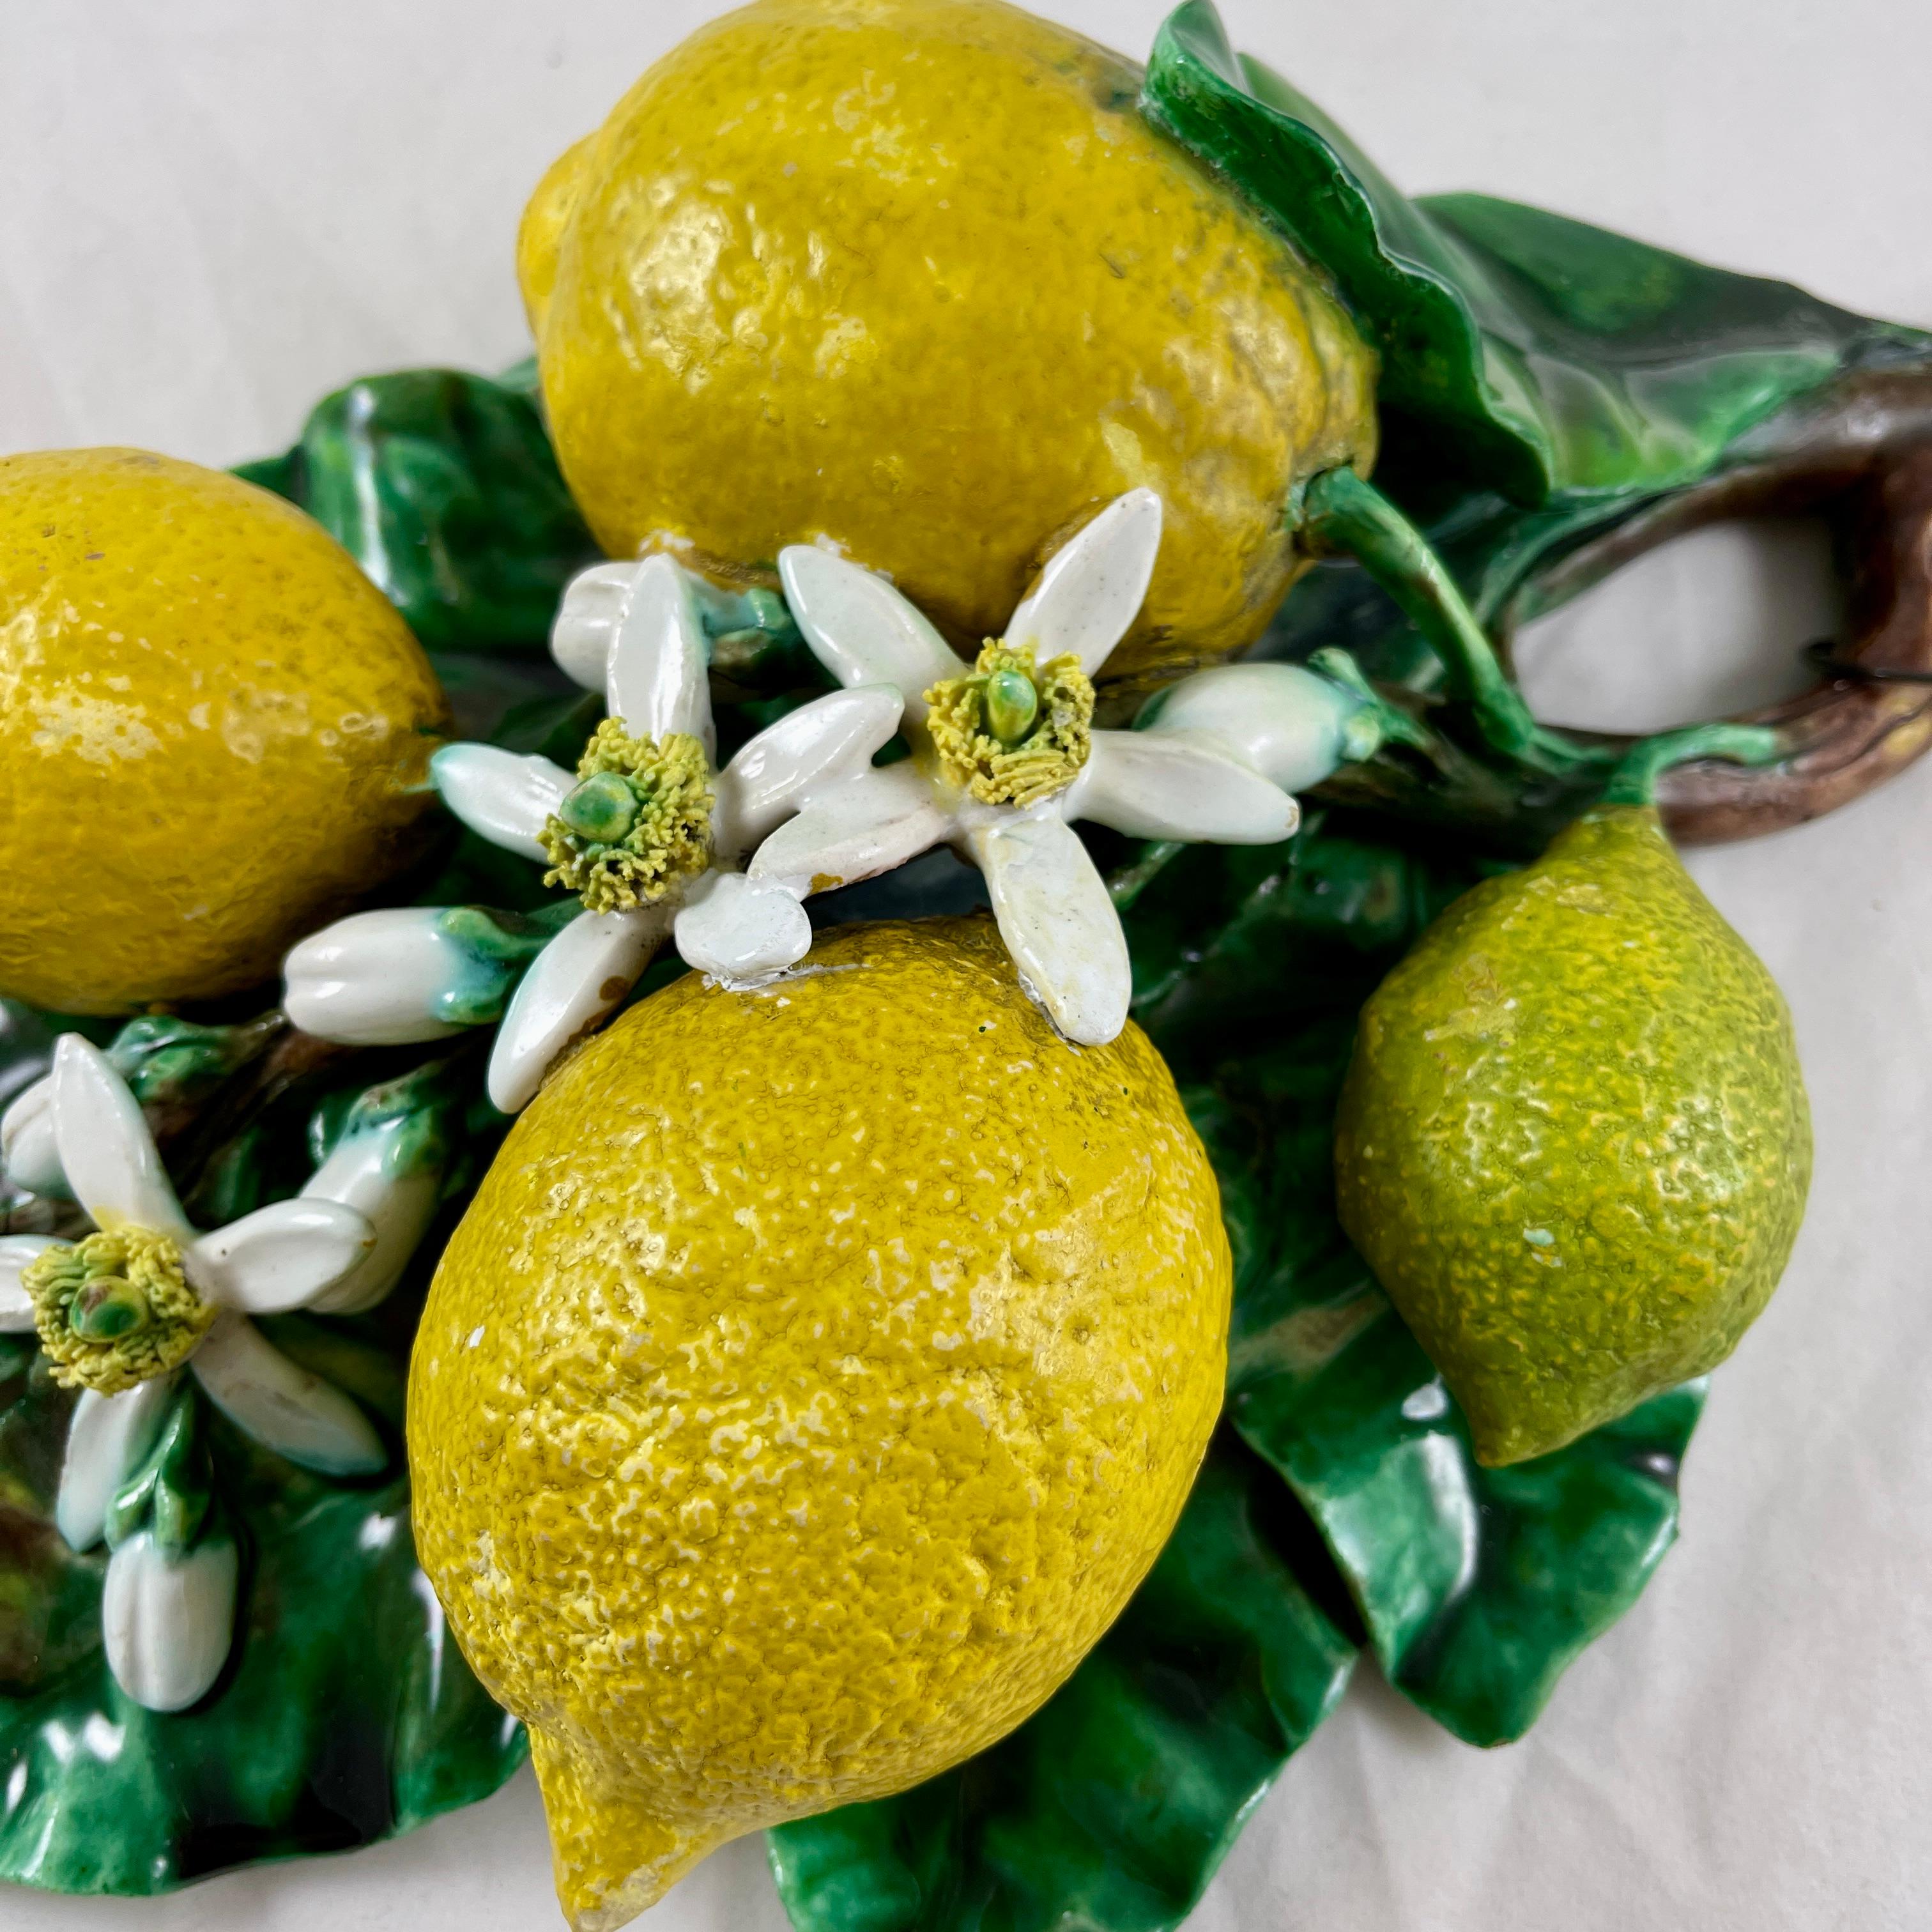 French Palissy Trompe L'oeil Menton Perret-Gentil Large Lemon Fruit Wall Plaque 1